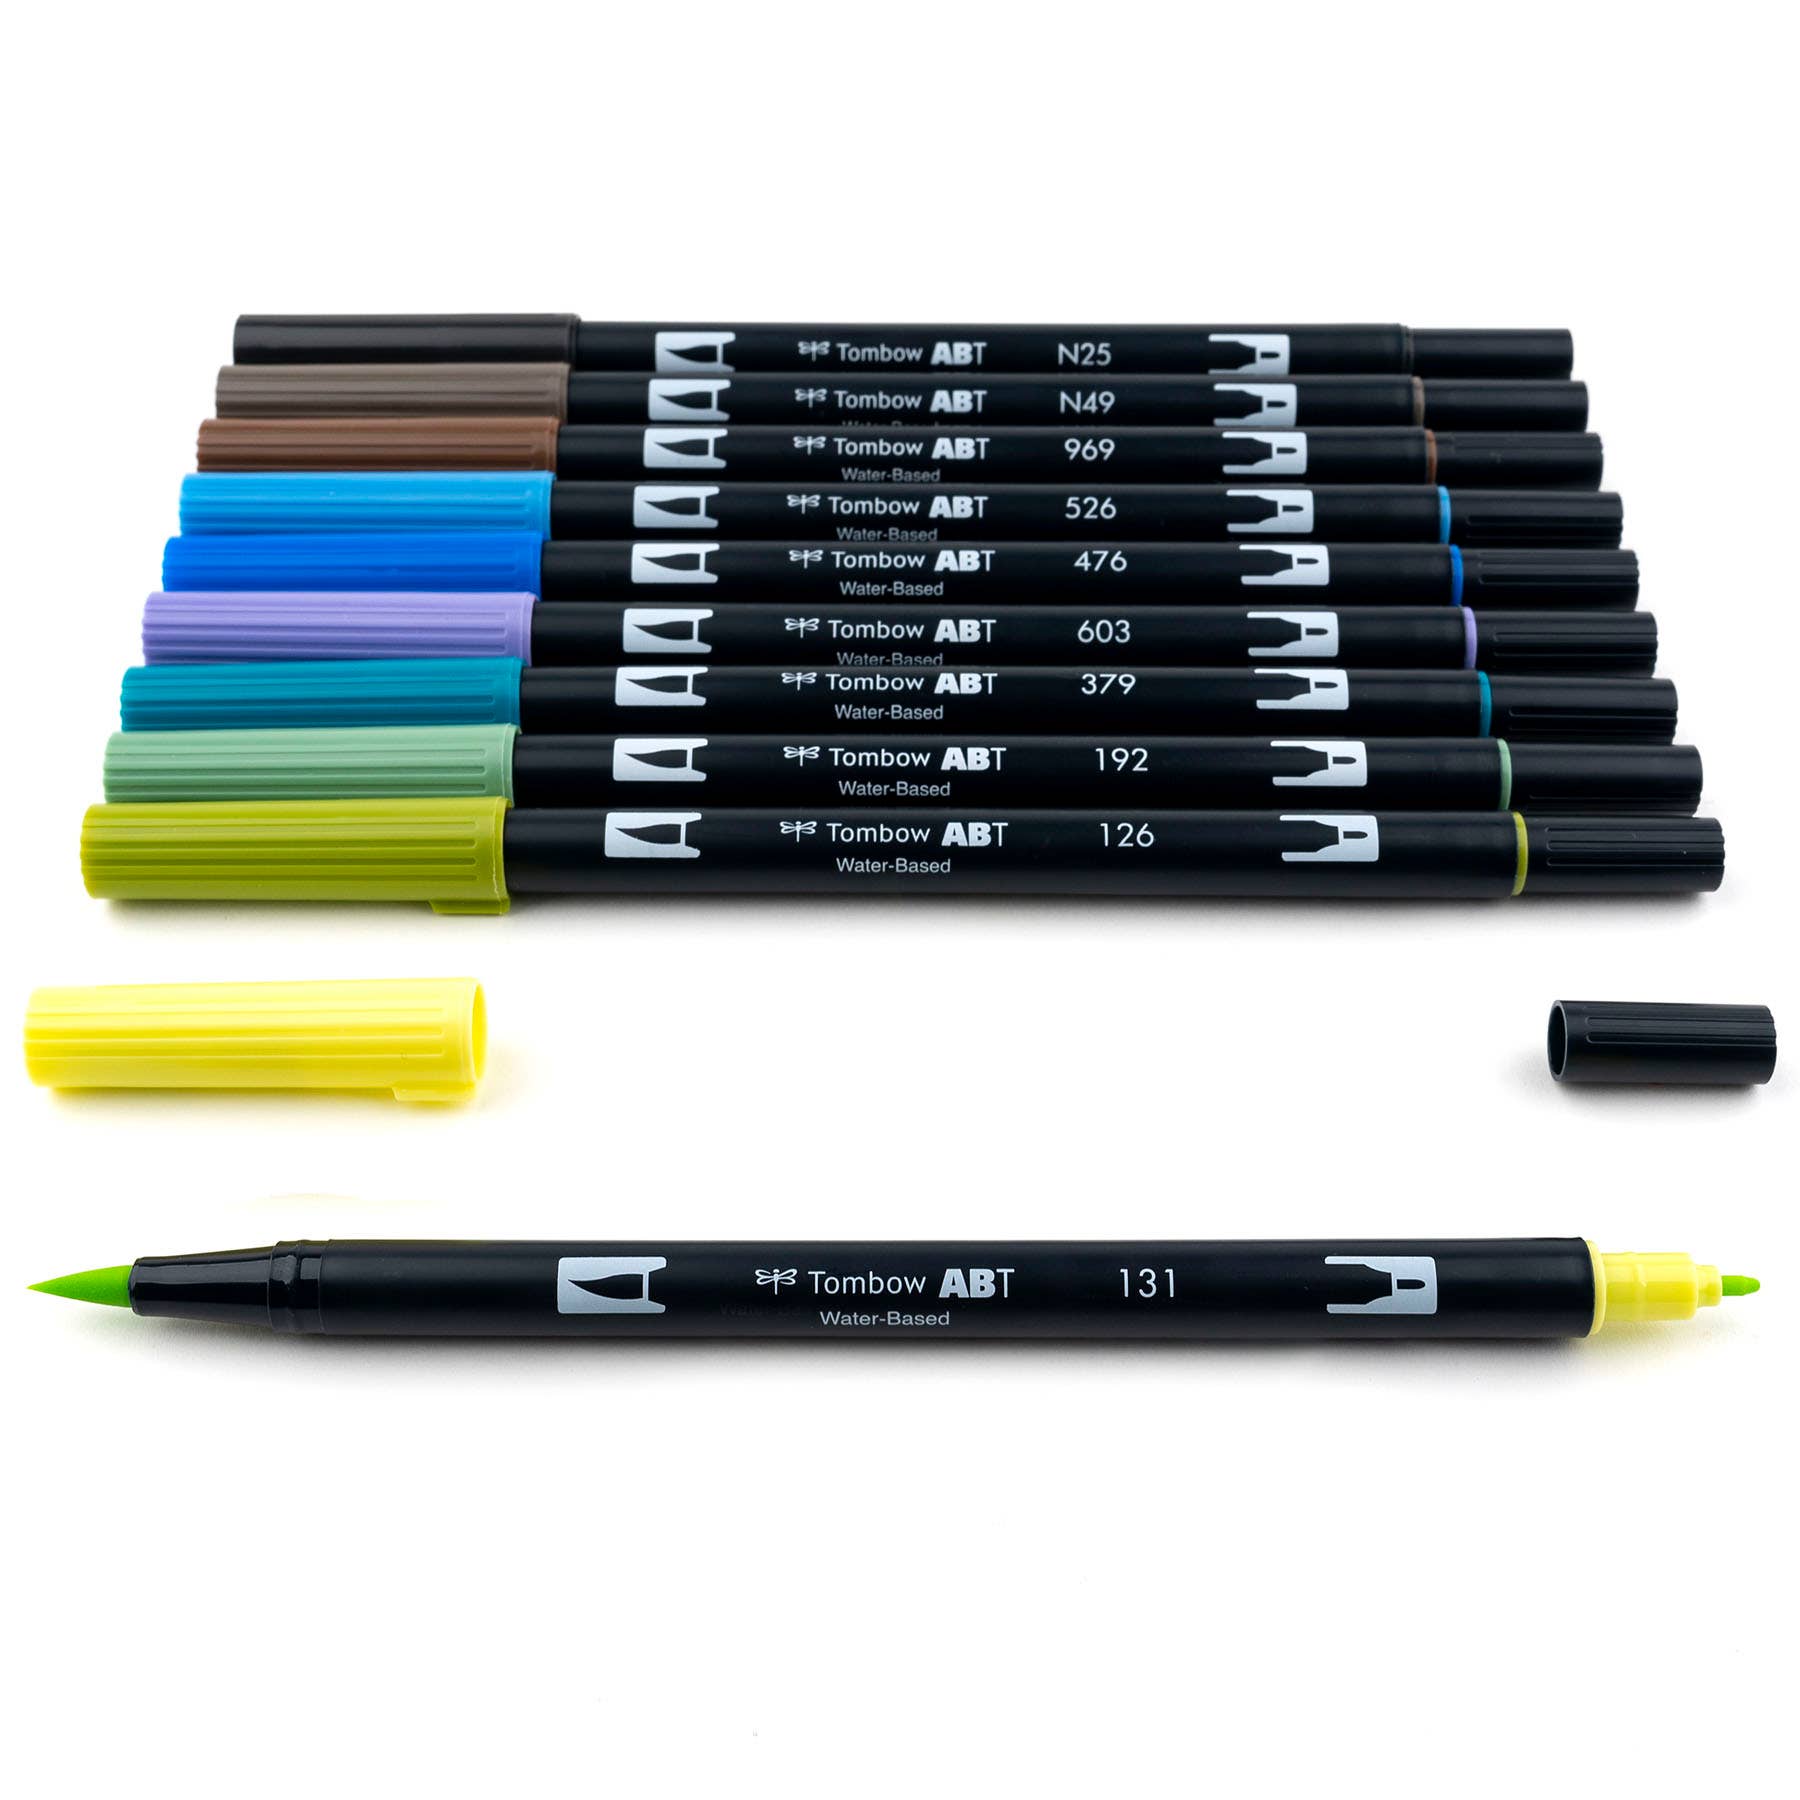 Landscape  - Dual Brush Pen Art Markers: Landscape - 10-Pack Tombow